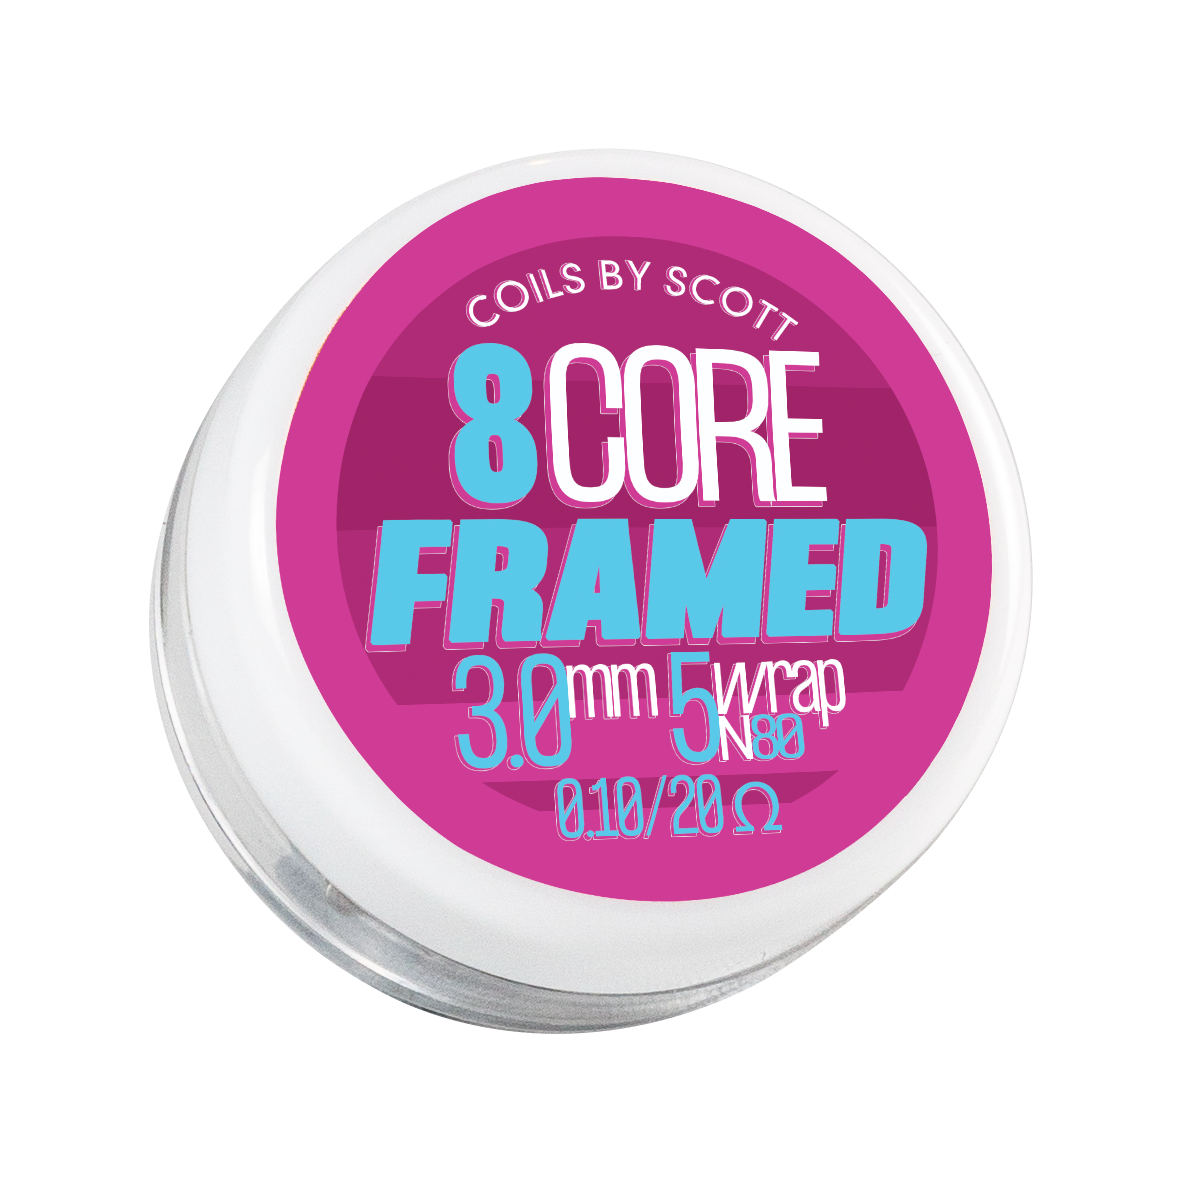 0.10 8 Core Framed